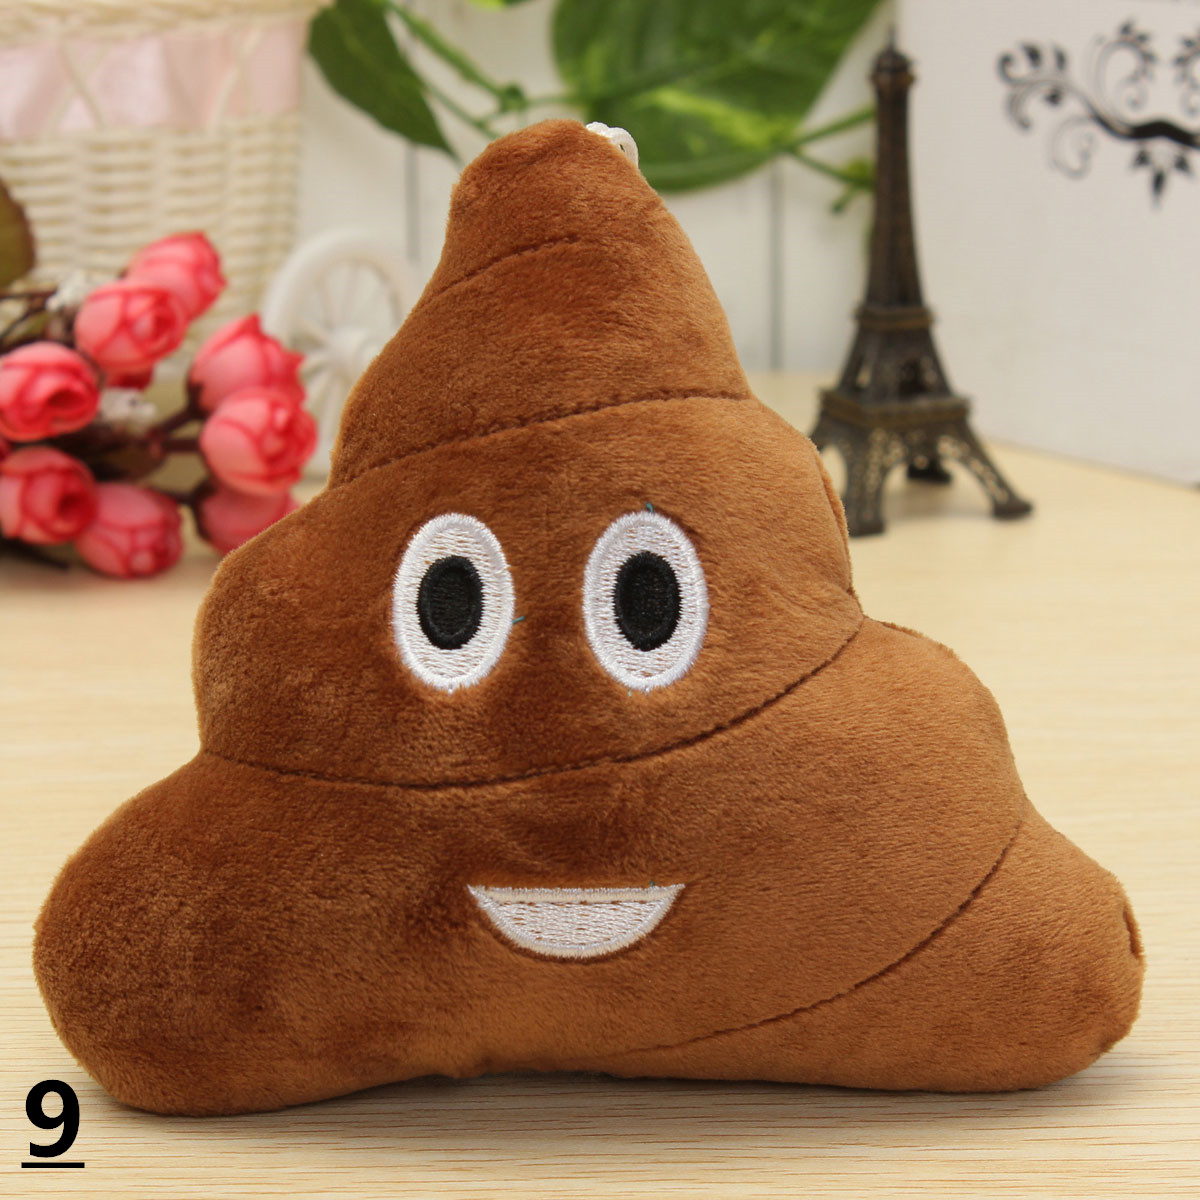 59-15cm-Emoji-Smiley-Emoticon-Stuffed-Plush-Soft-Toy-Round-Cushion-Ornament-Decor-Gift-1133560